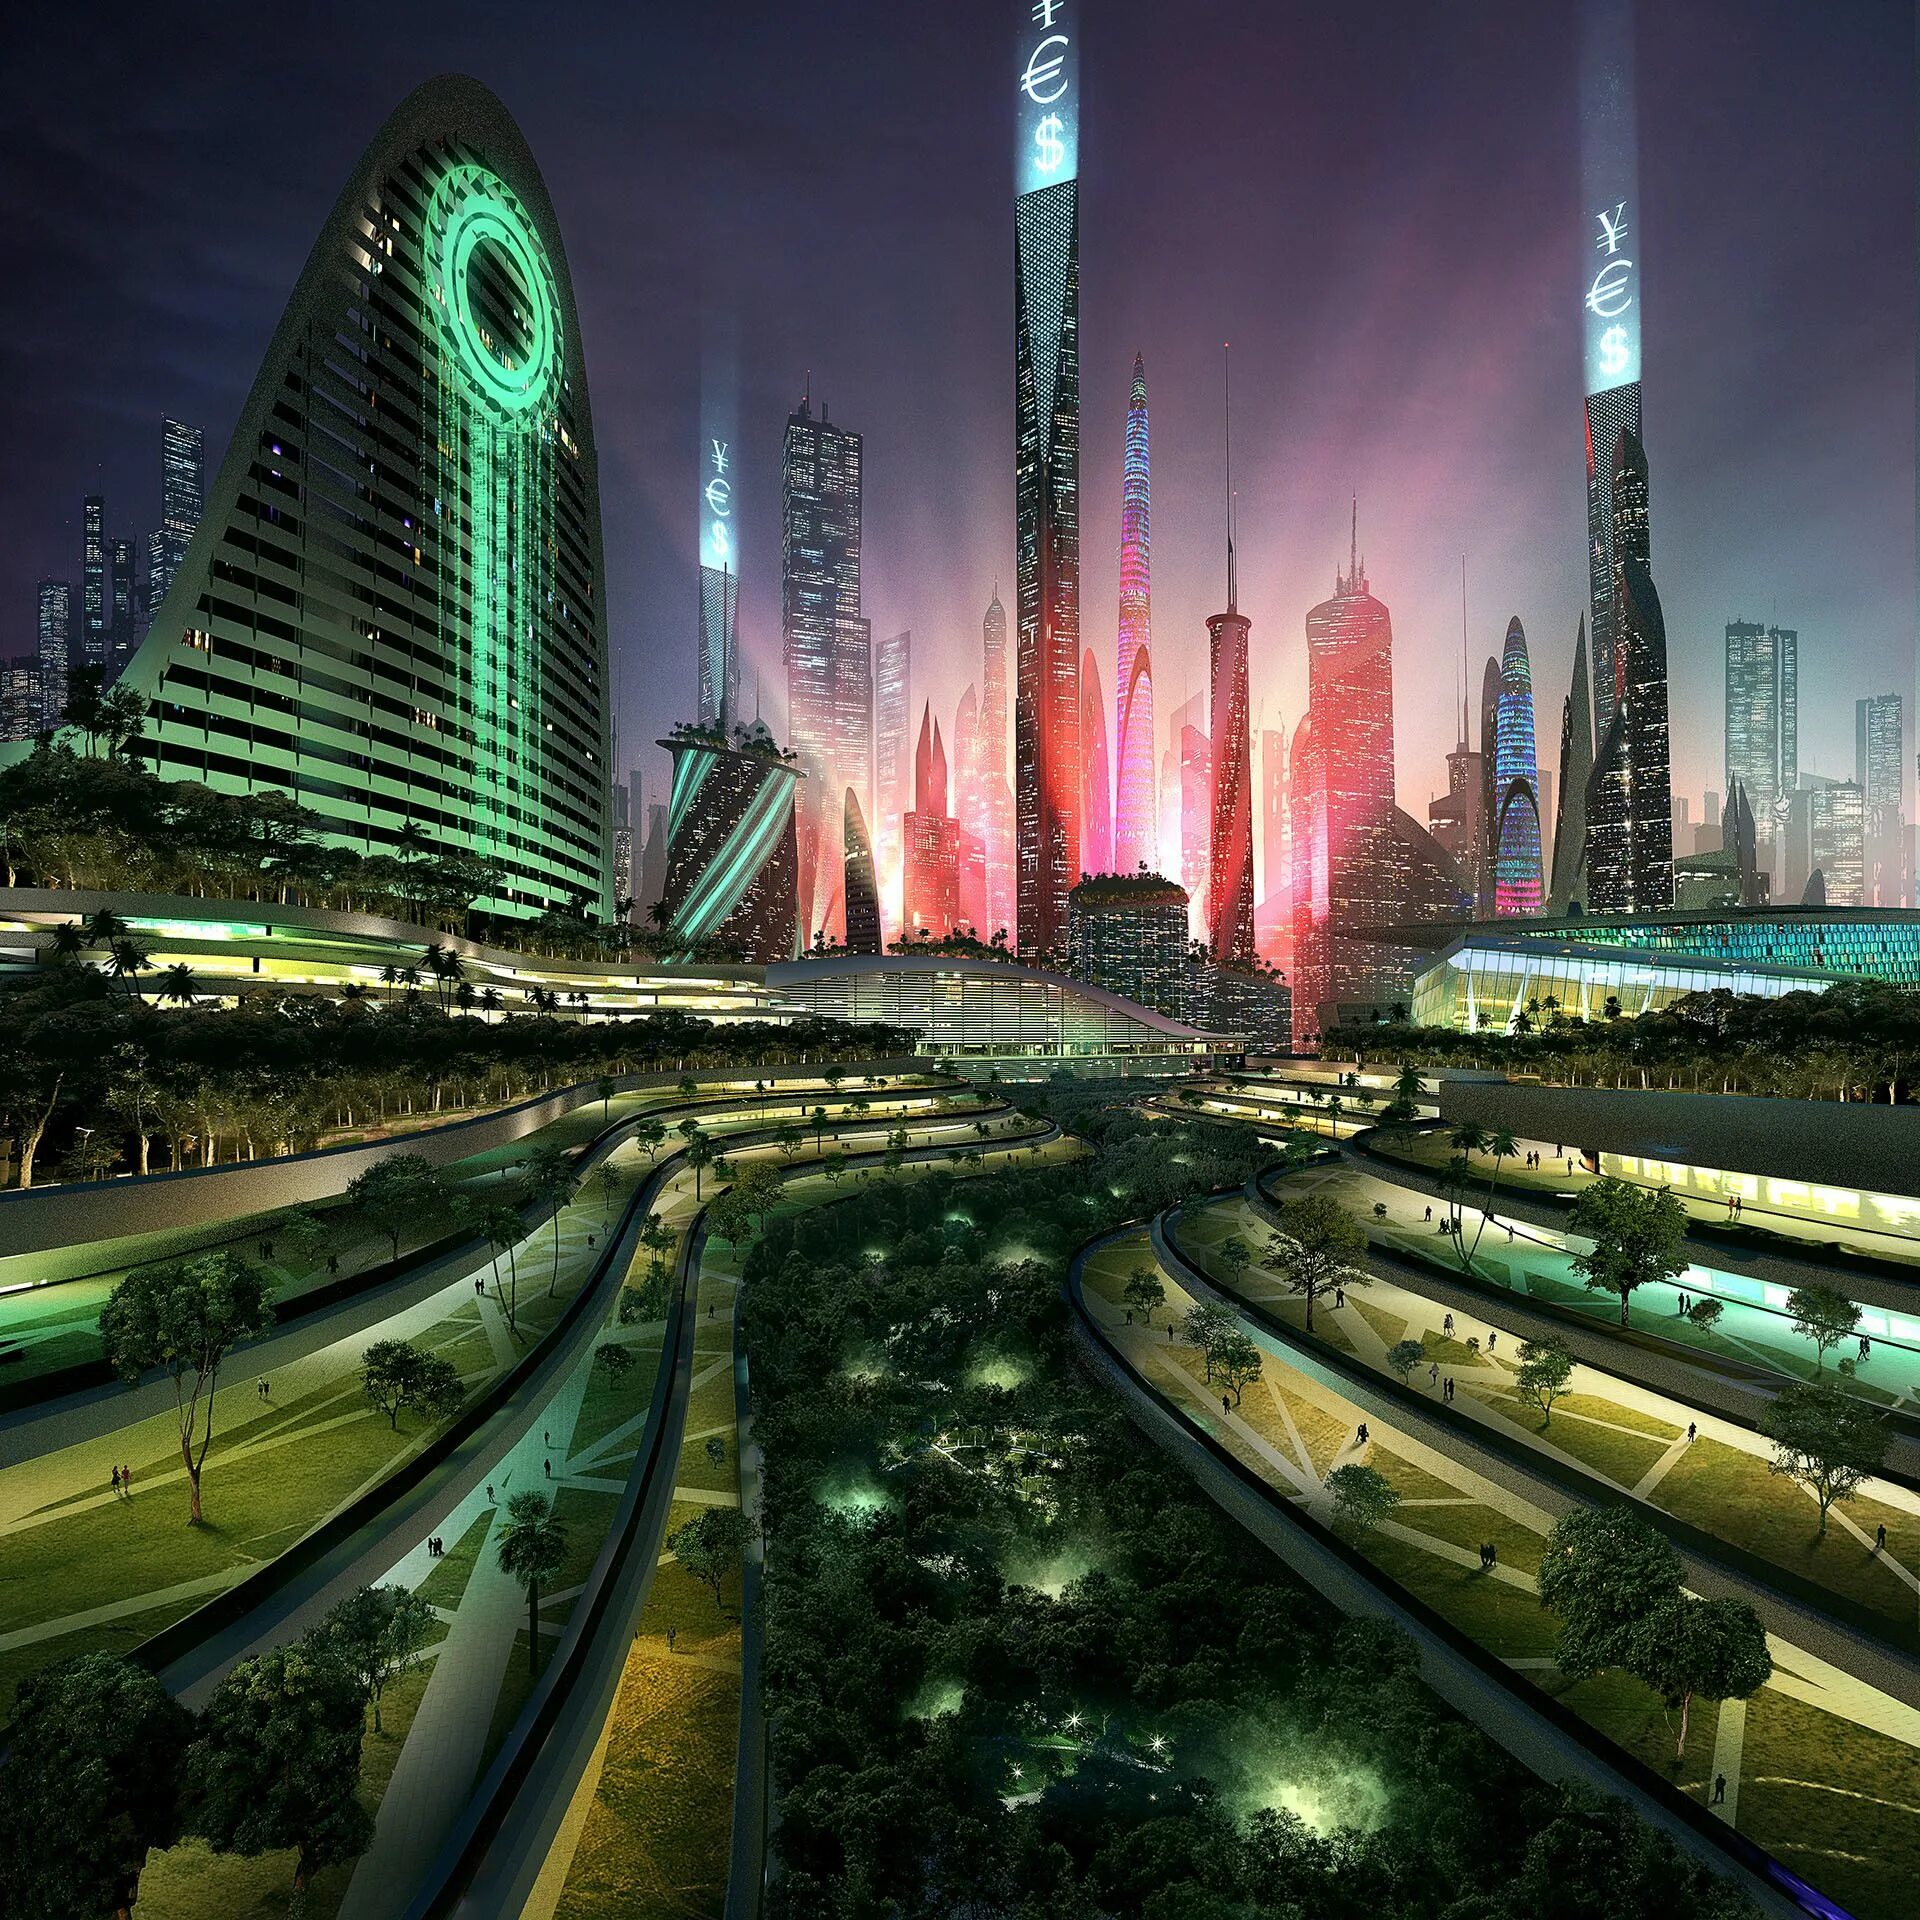 Найти будущее. Утопия китбаш. Sci Fi утопия. Город утопия арт. Город будущего арт футуристический утопия.